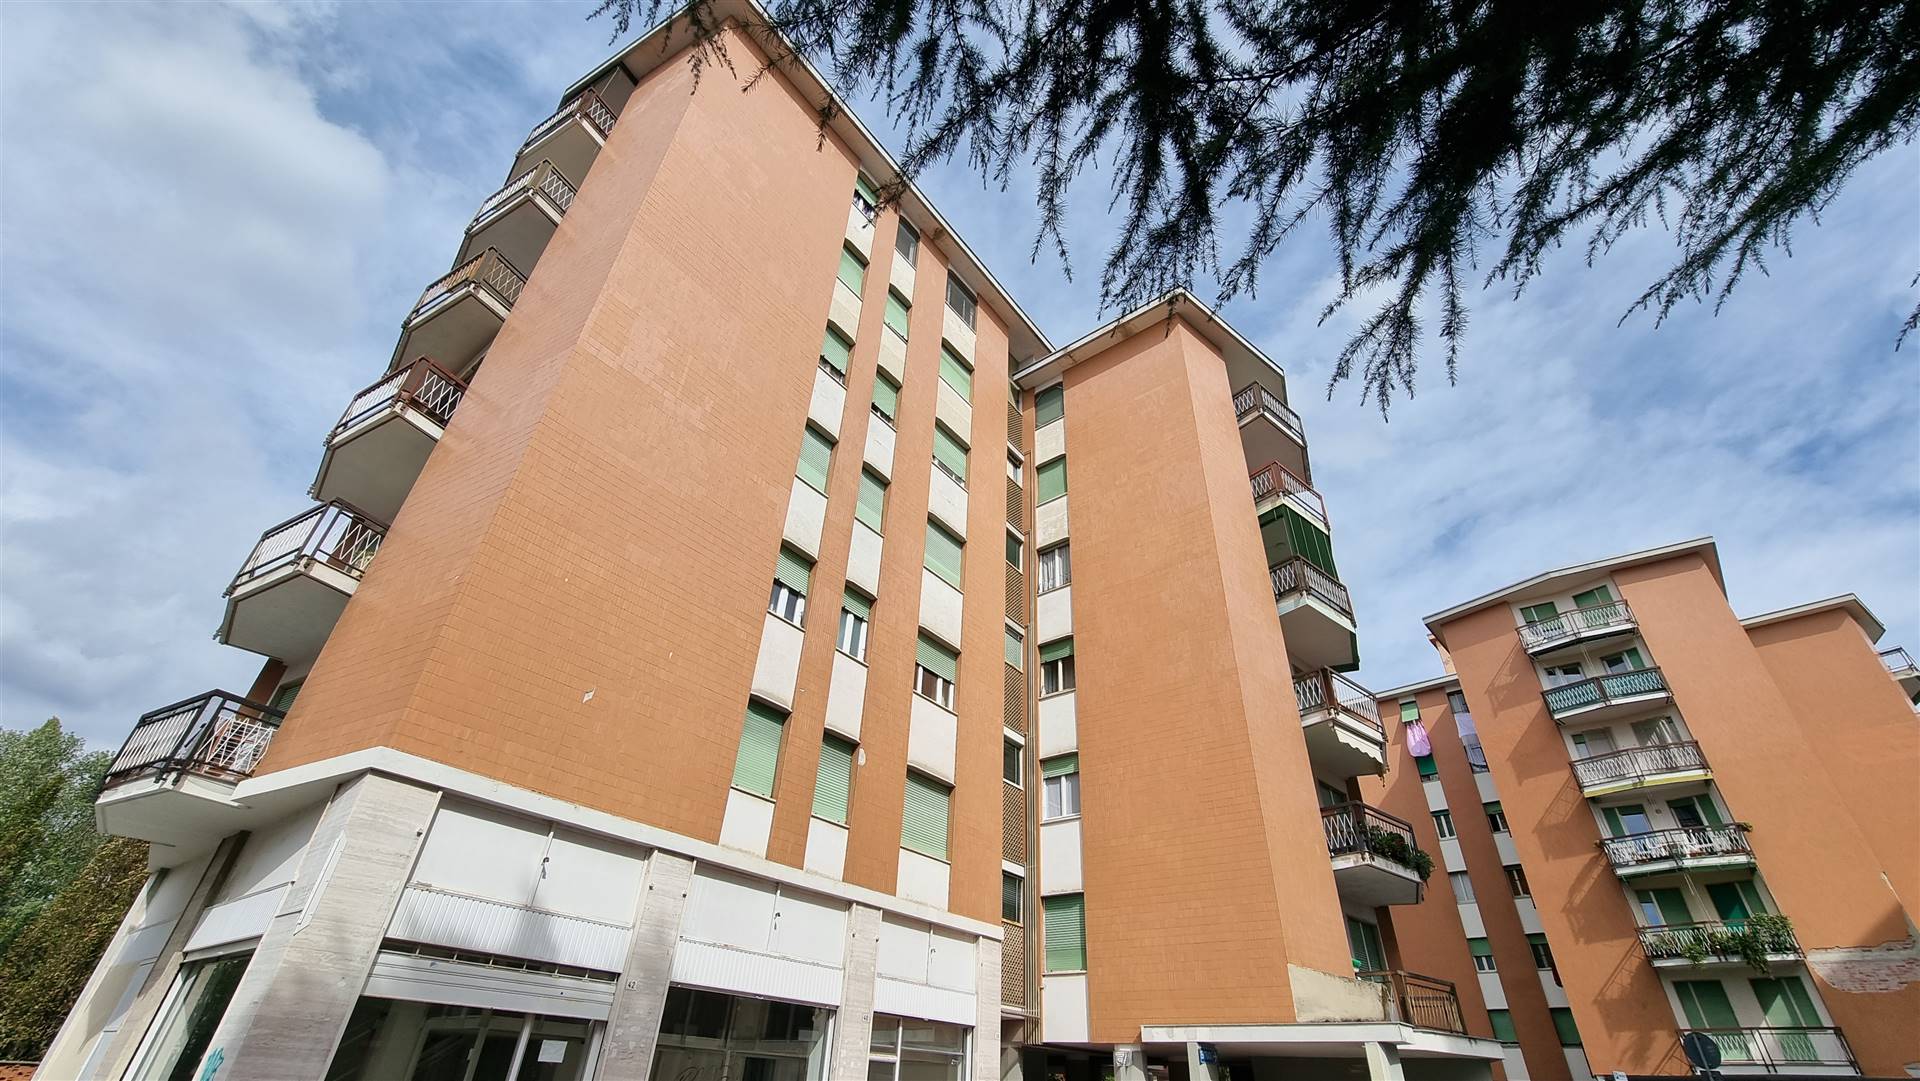 Appartamento in vendita a Cossato, 4 locali, prezzo € 36.500 | PortaleAgenzieImmobiliari.it